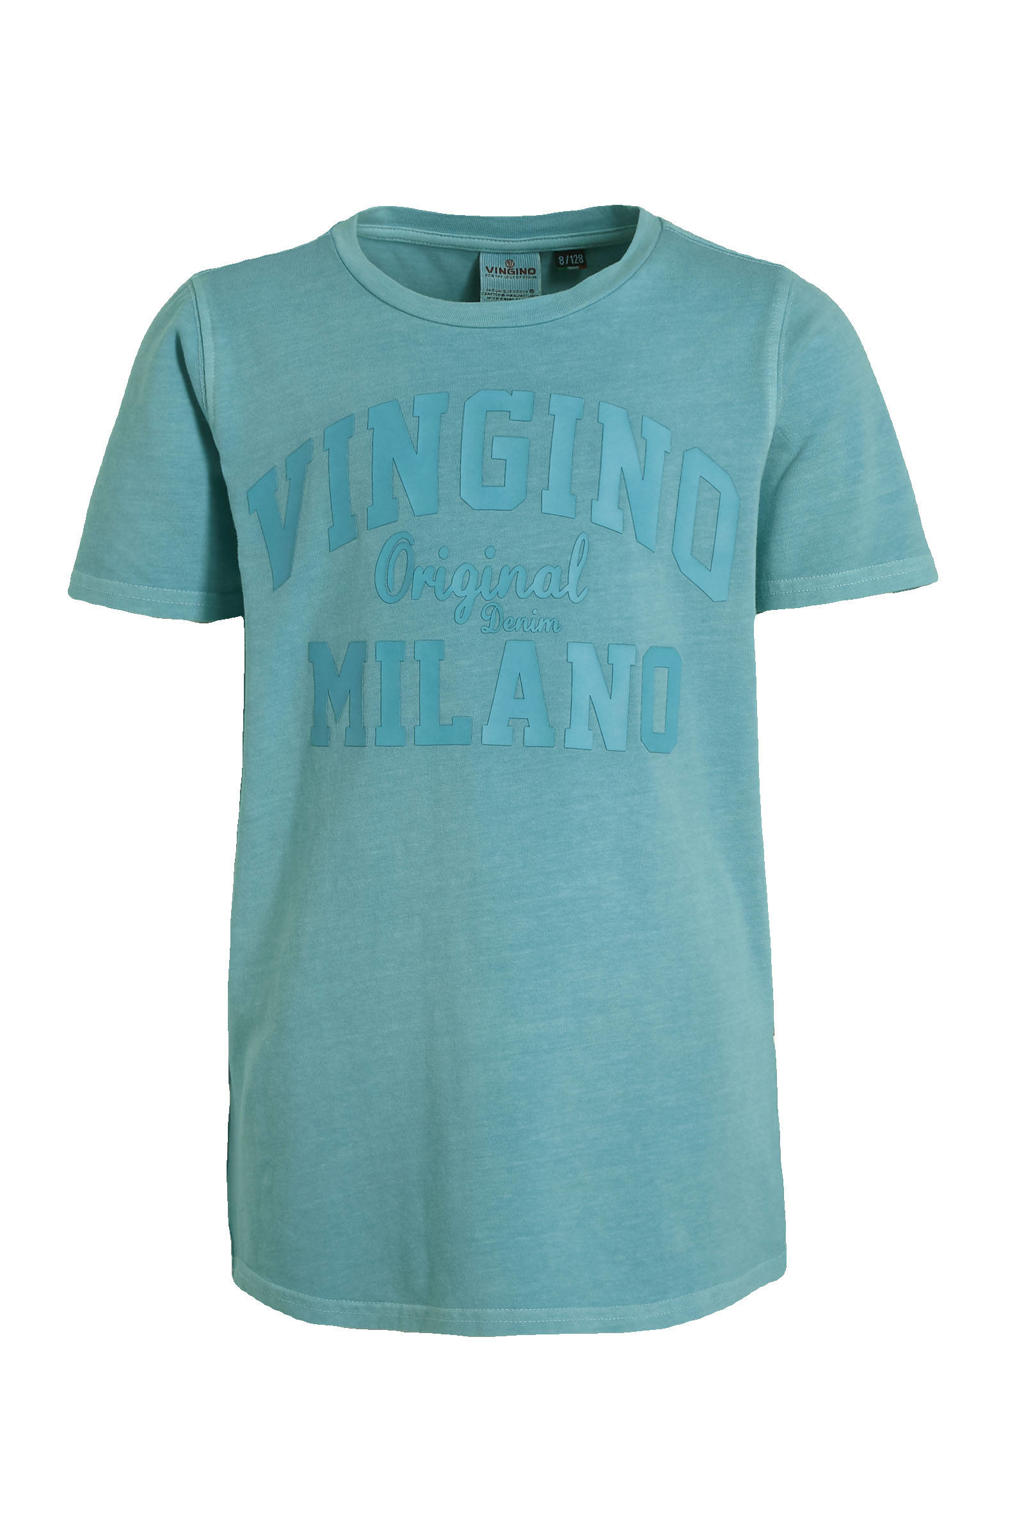 Vingino Essentials T-shirt met logo zeeblauw